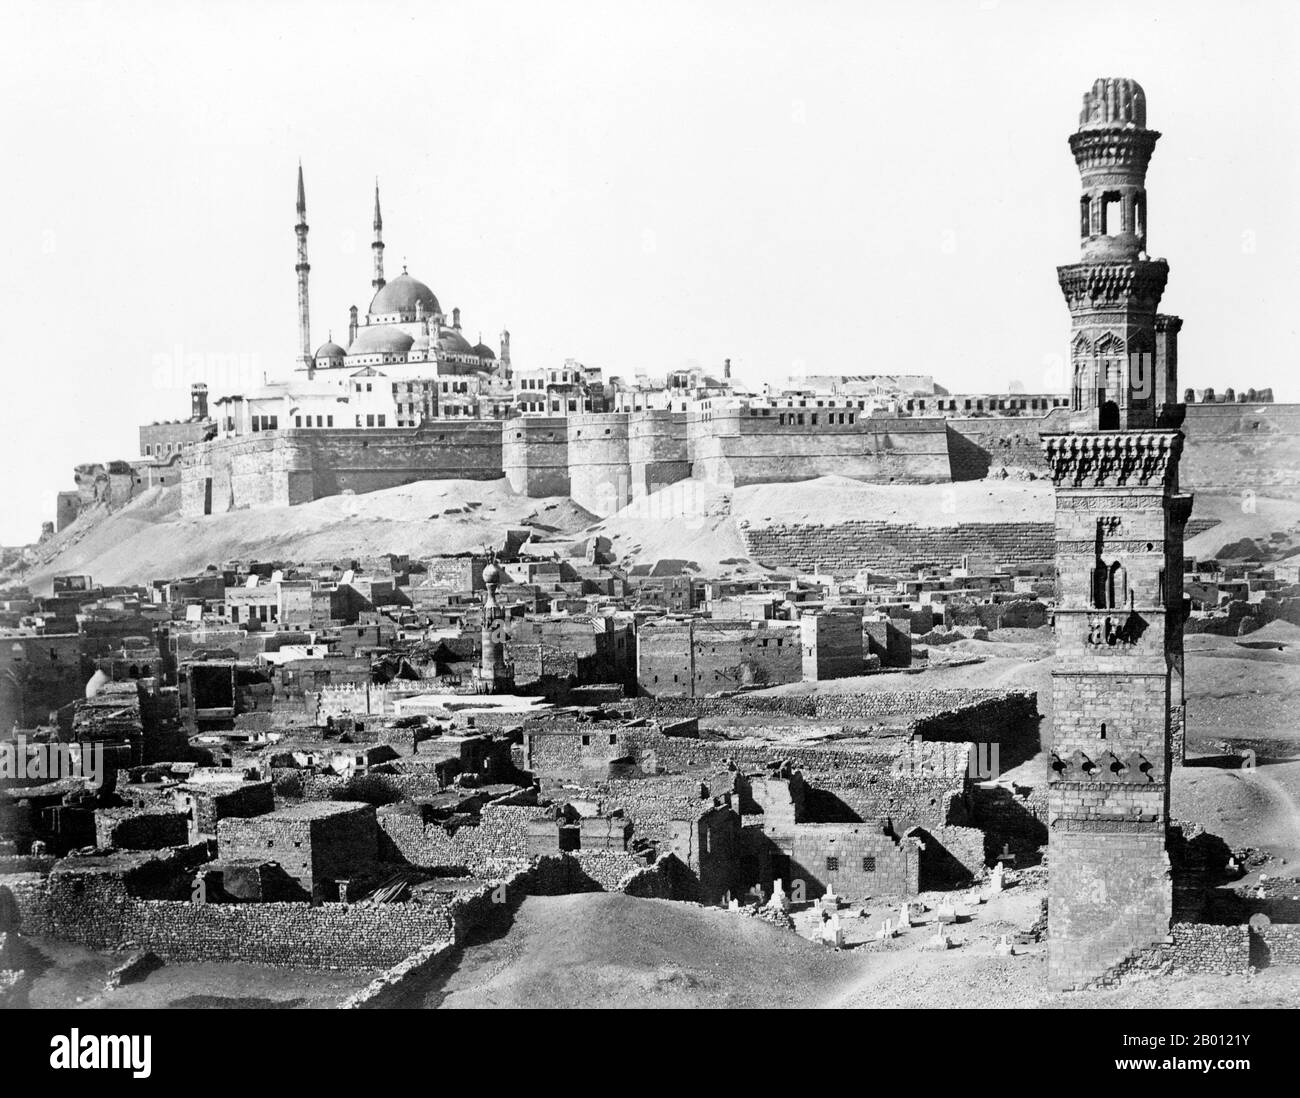 Ägypten: Die Zitadelle von Saladin, Kairo (Arabisch: Qala 'at Salah ad-DIN). Foto von Antonio Beato (1835-1906), c. 1870-1890. Die Saladiner Zitadelle von Kairo ist eine mittelalterliche islamische Festung in Kairo, Ägypten. Die Lage, Teil des Muqattam Hügels in der Nähe des Zentrums von Kairo, war einst berühmt für seine frische Brise und die großartige Aussicht auf die Stadt. Heute ist sie eine erhaltene historische Stätte mit Moscheen und Museen.die Zitadelle wurde zwischen 1176 und 1183 u.Z. vom Ayyubiden-Herrscher Salah al-DIN (Saladin) befestigt, um sie vor den Kreuzrittern zu schützen. Stockfoto